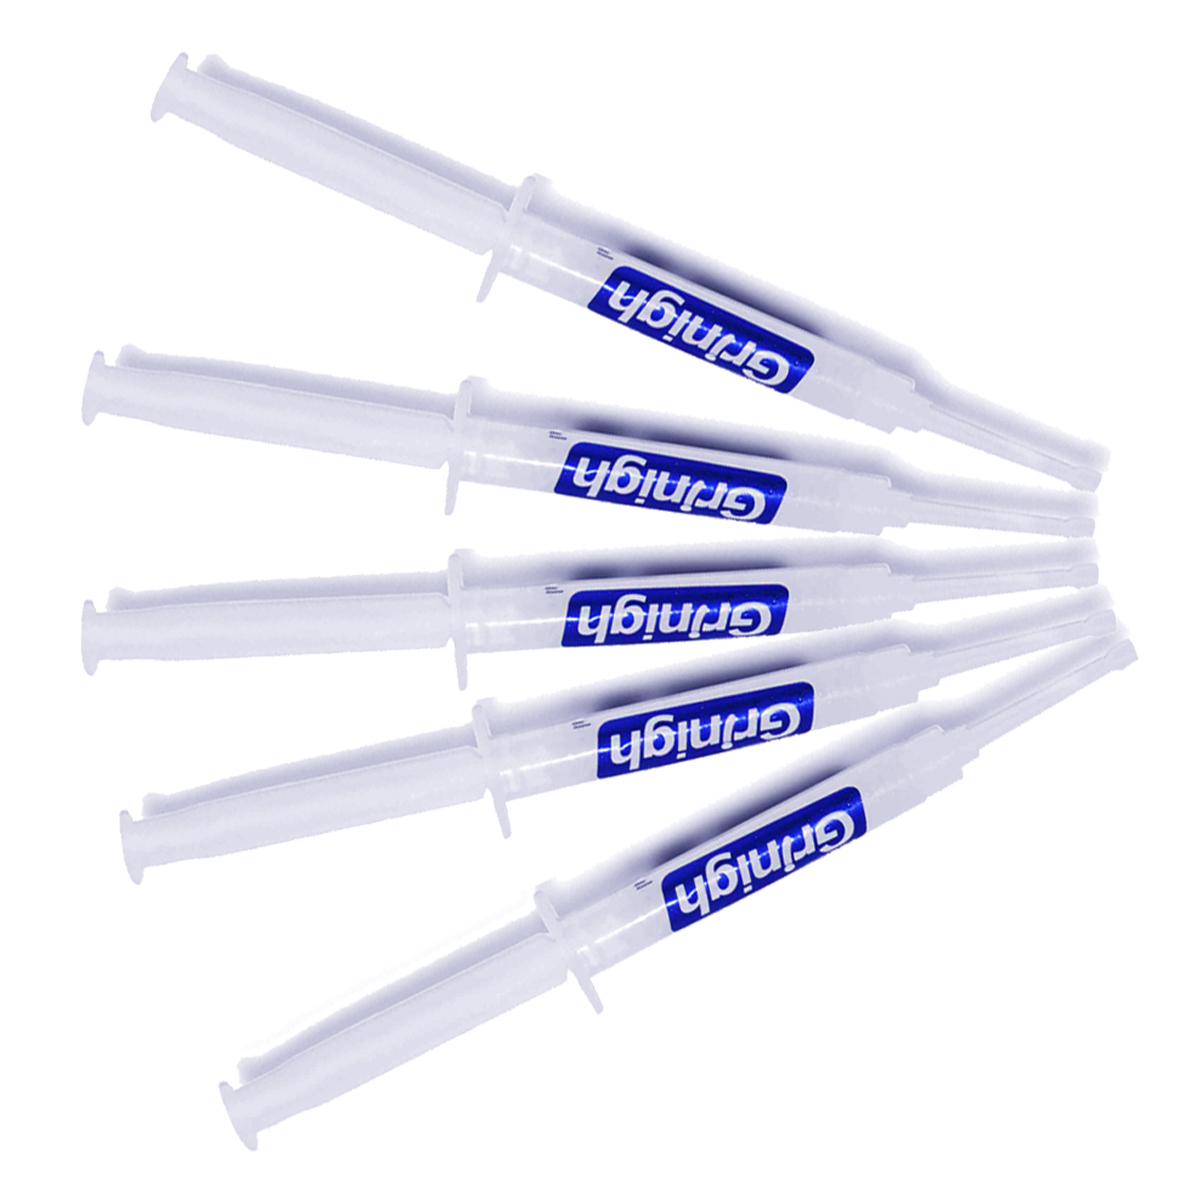 Grin365 4.5 ml Tandblekning Gel ersättningssprutor för Whitening System - Refill kit med mer än 450 behandlingar (35%HP eller 44% CP) Förpackning av 100